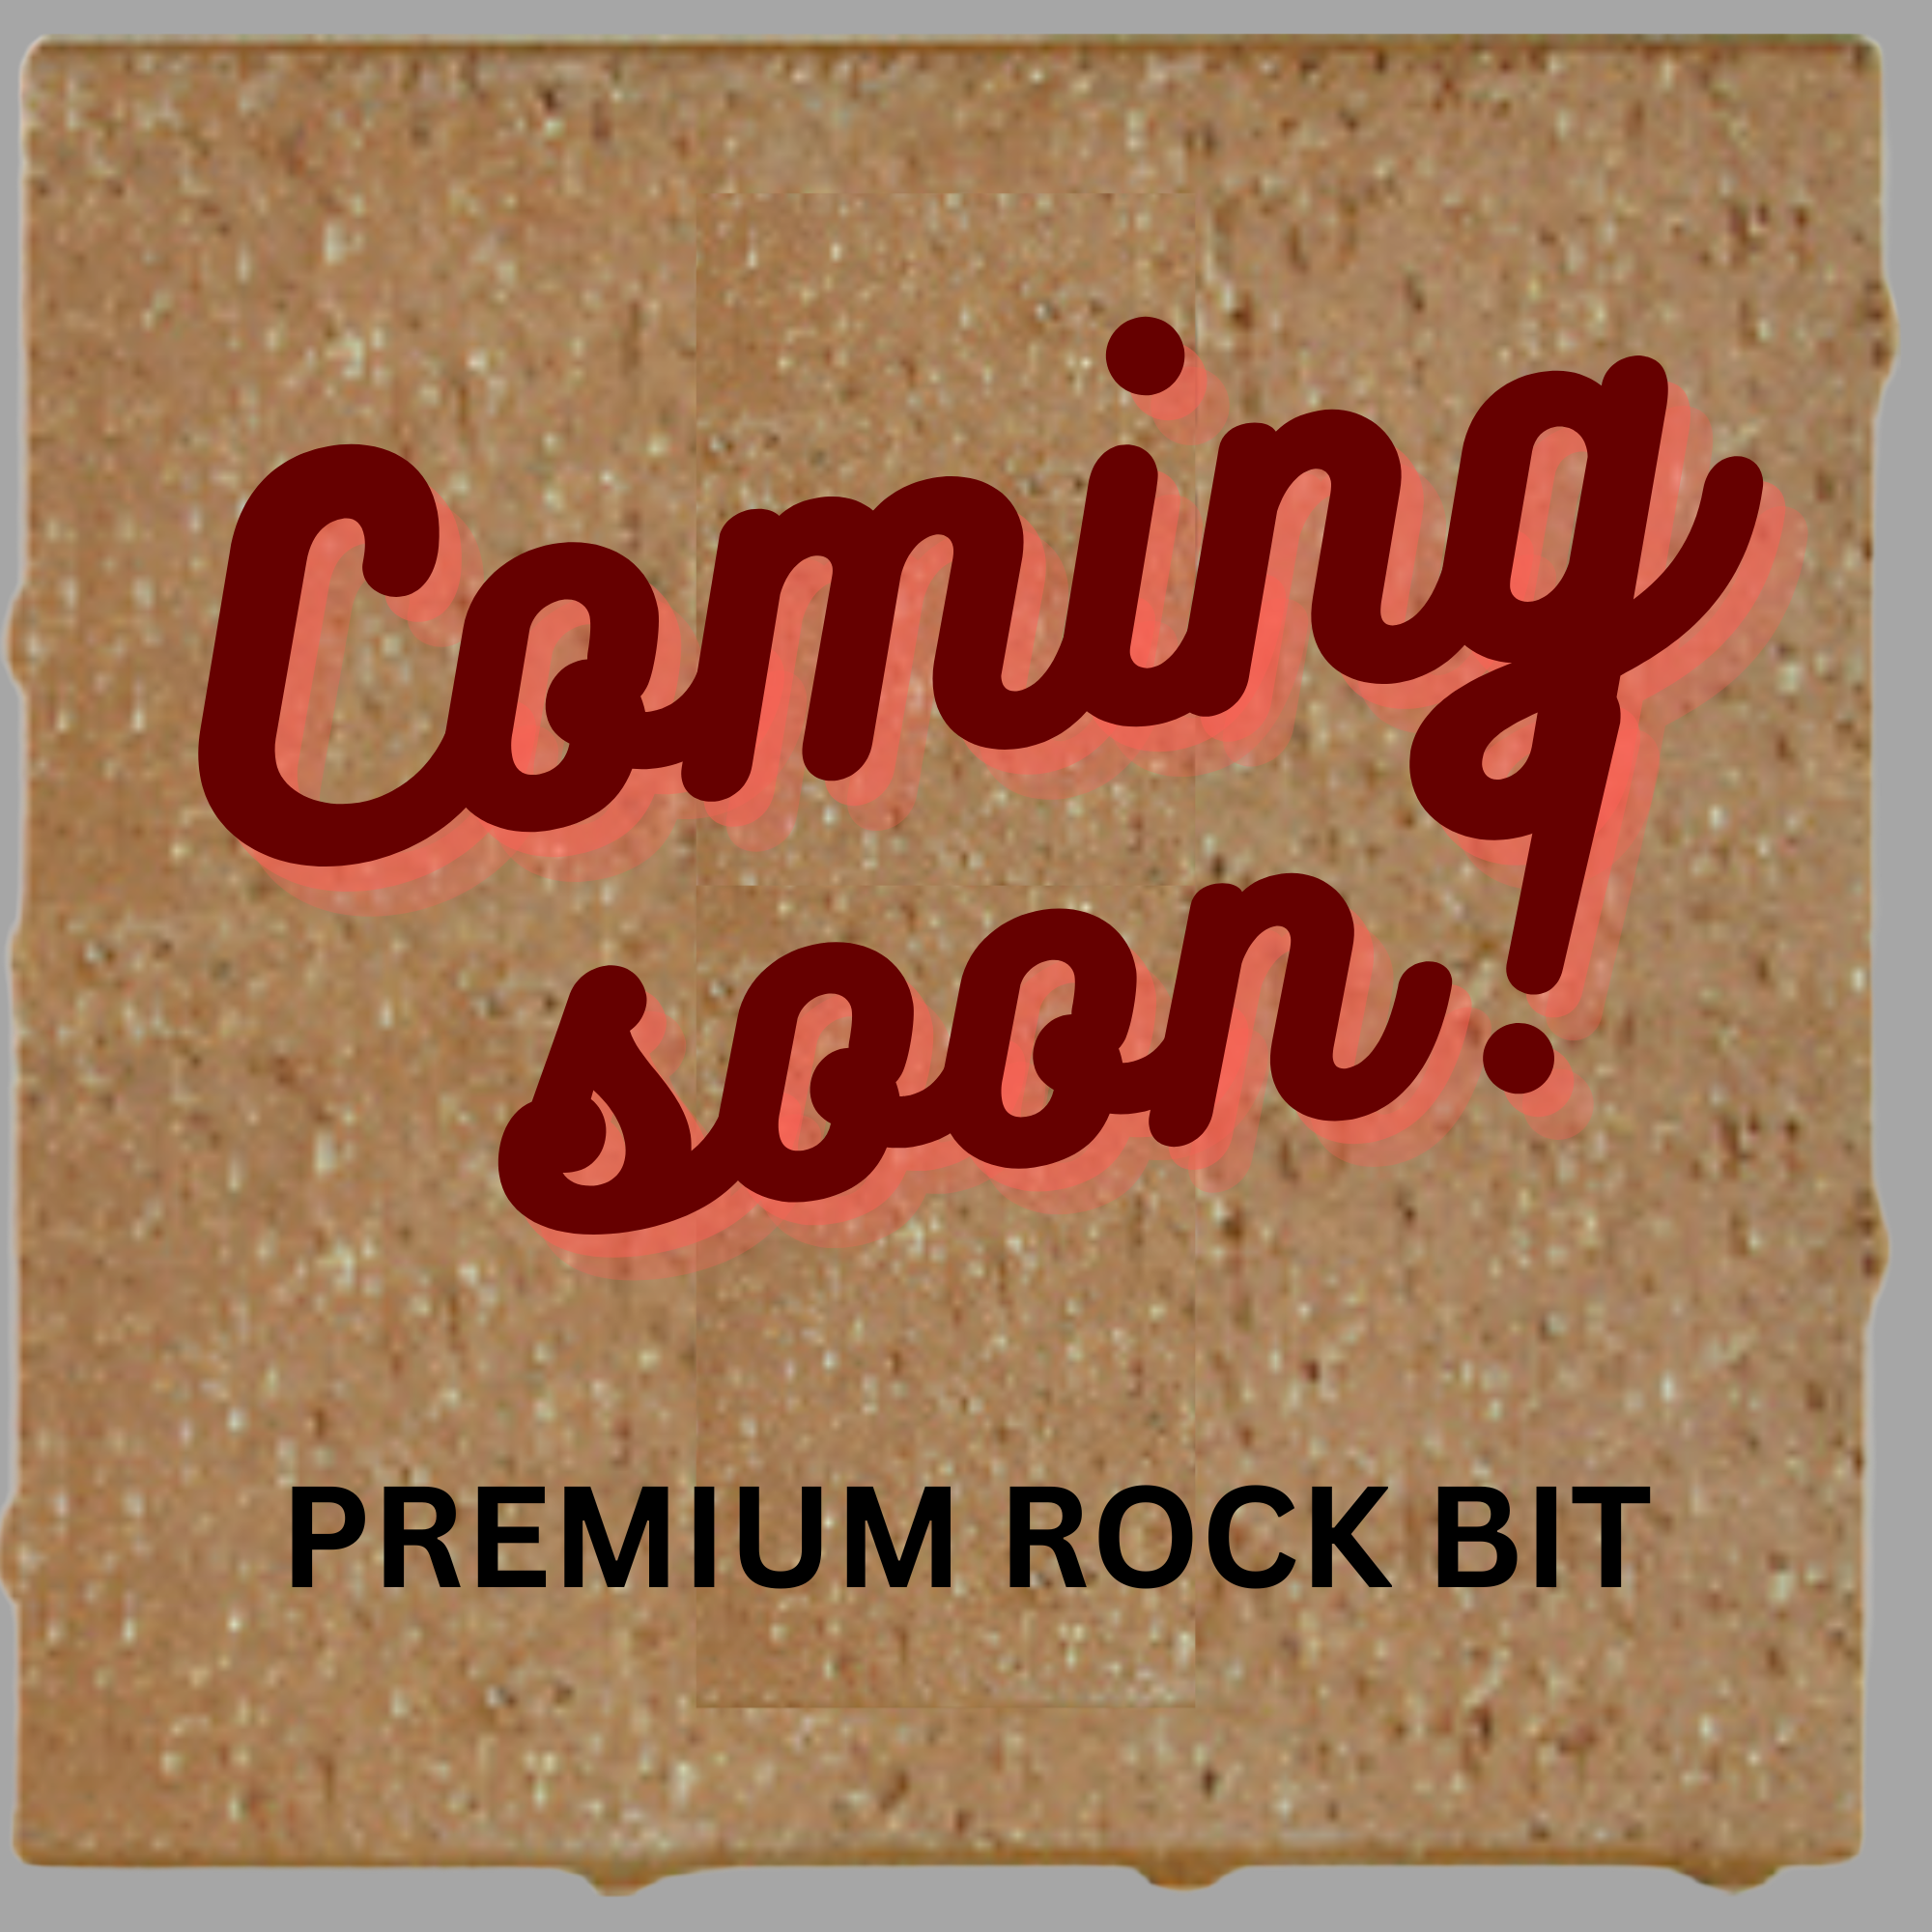 Premium Rock Bit